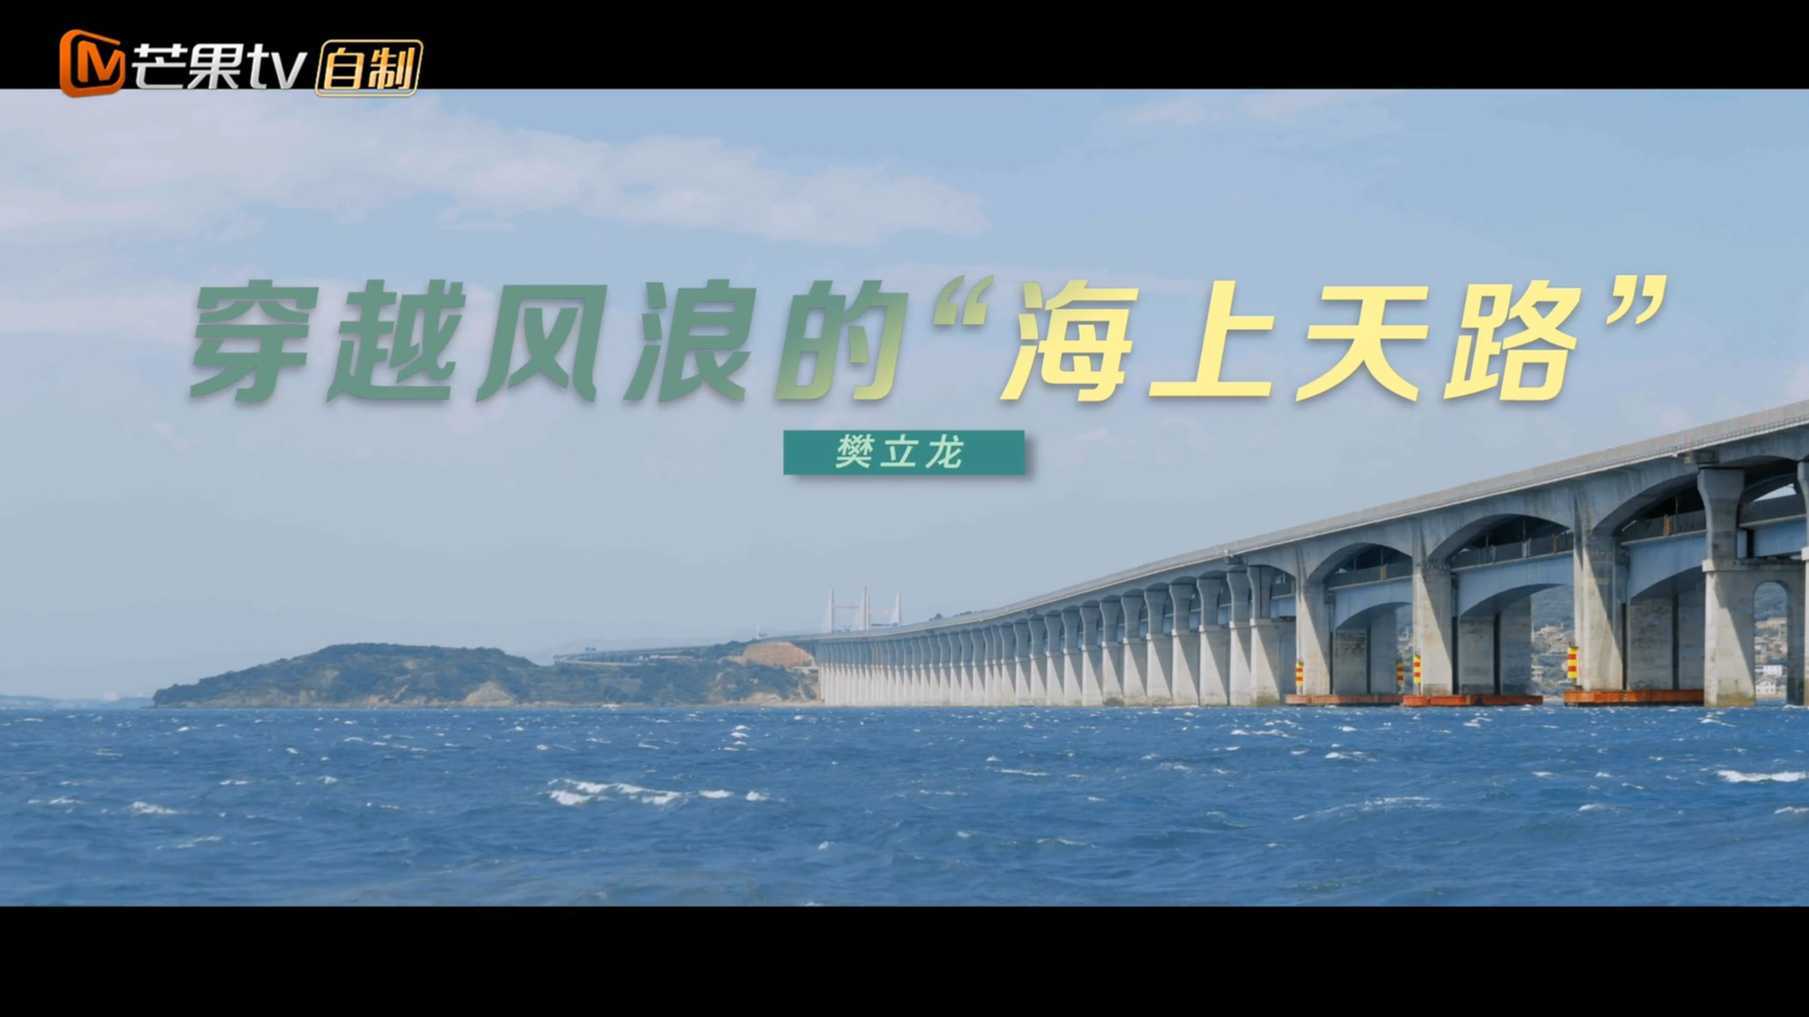 芒果TV这十年纪录片《穿越风浪的“海上天路”》